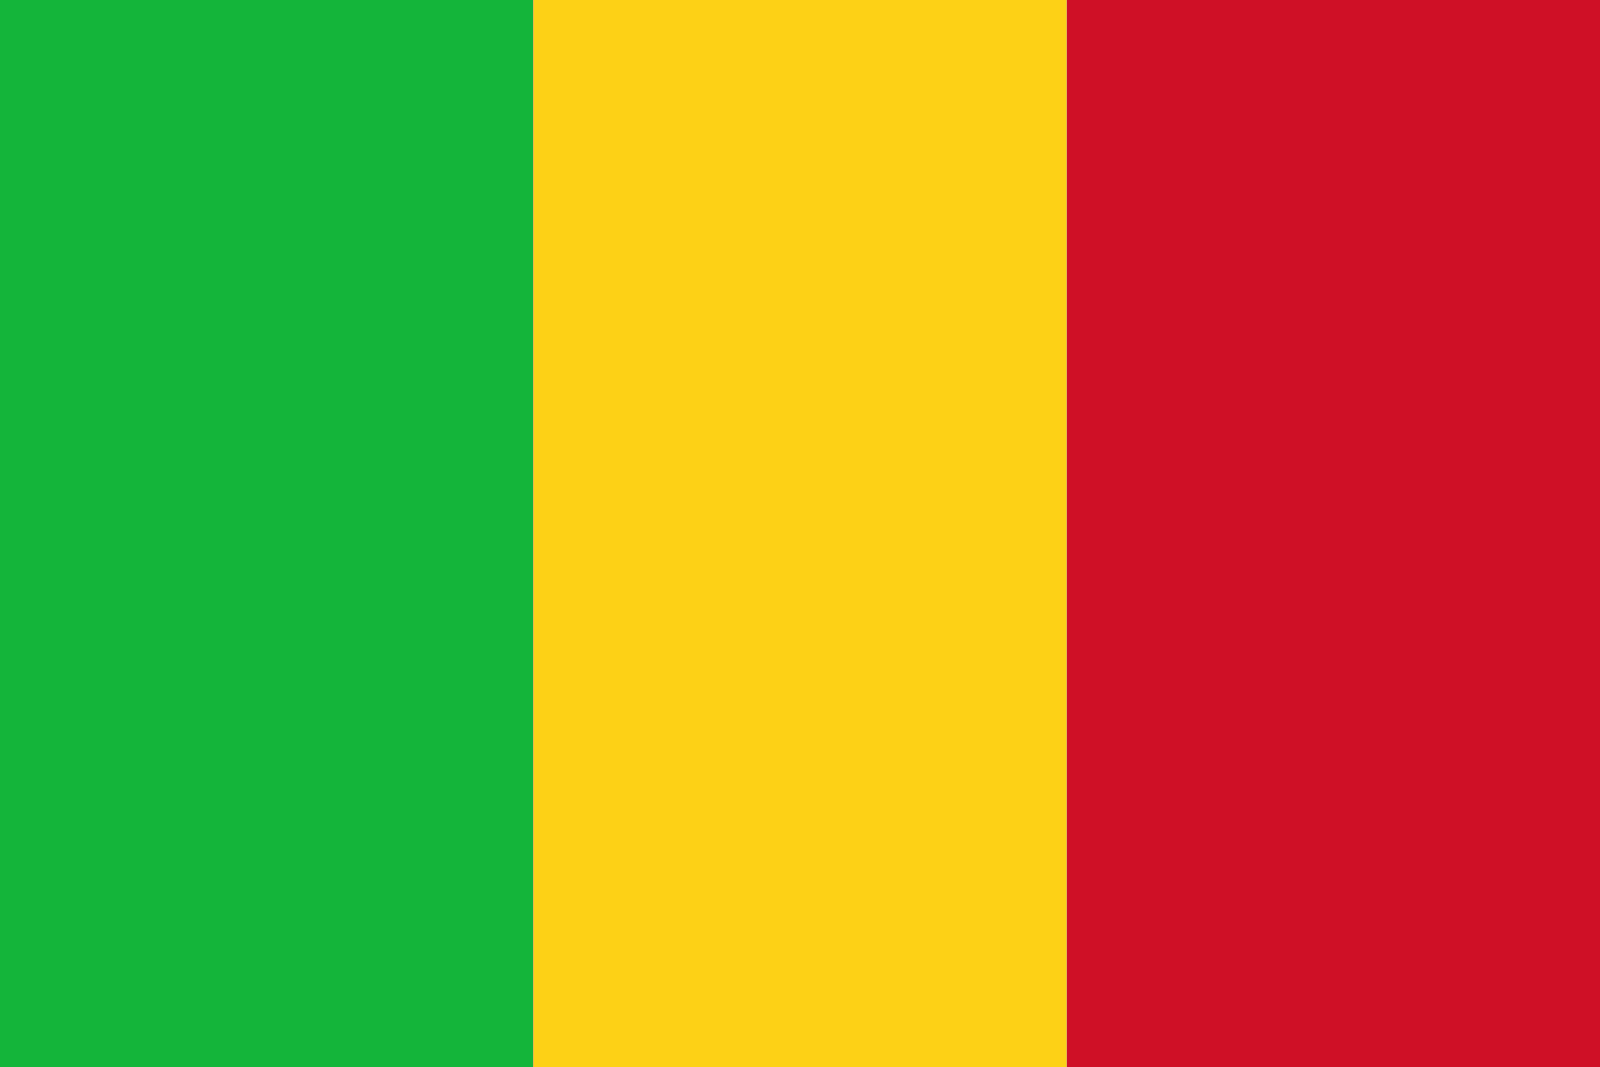 Mali zászló